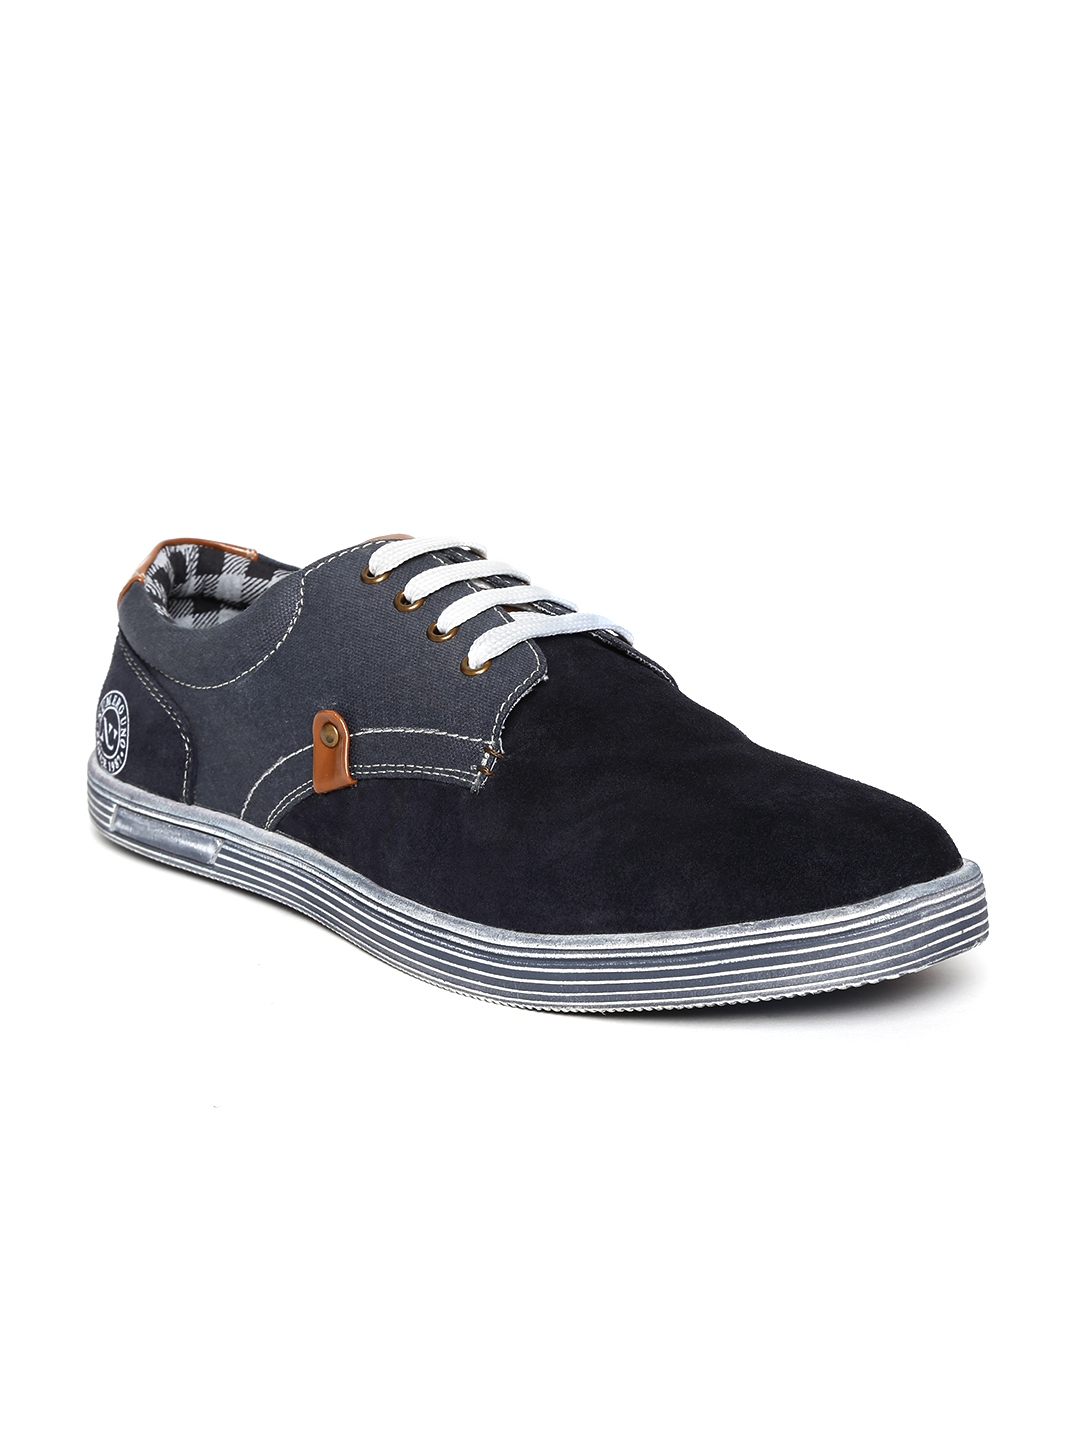 Buy Numero Uno Men Navy Suede Sneakers - Casual Shoes for Men 1474322 ...